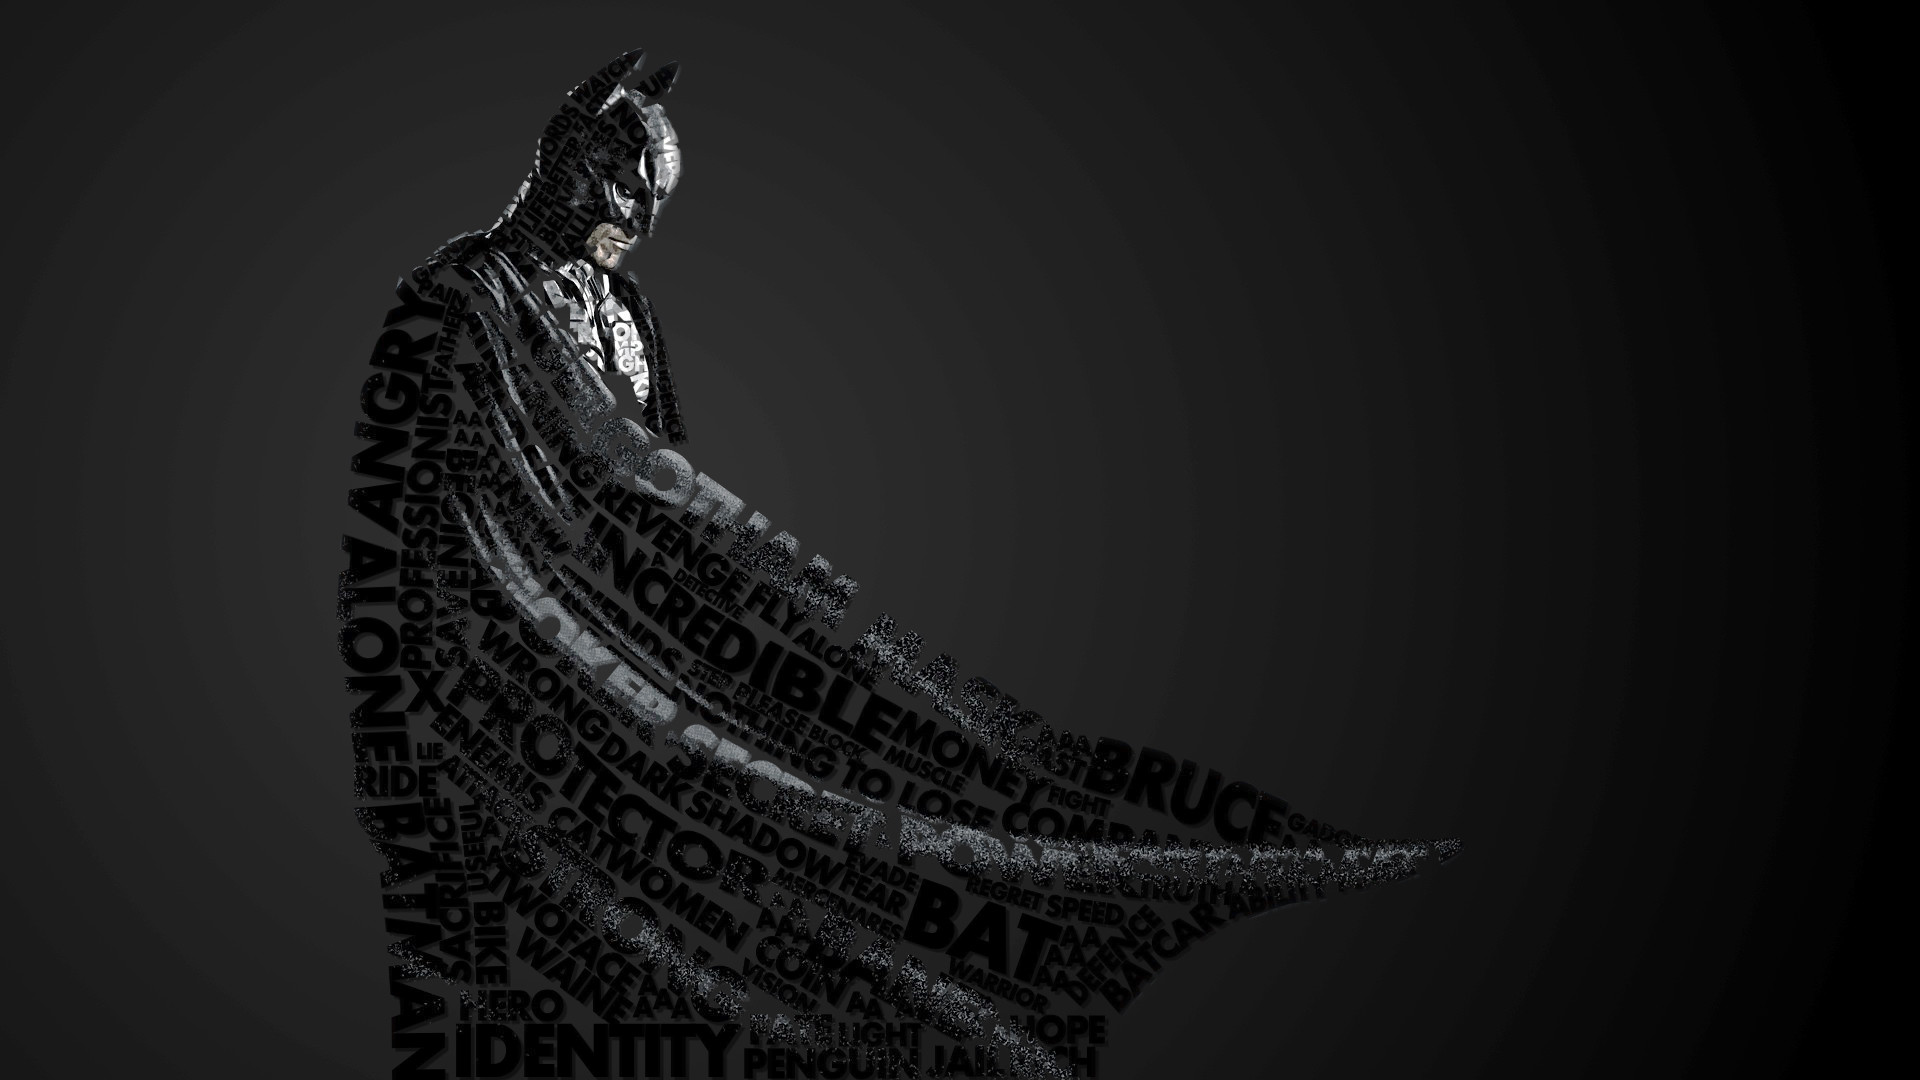 Batman Beyond Hd Wallpapers 1080p A new computer wallpaper.